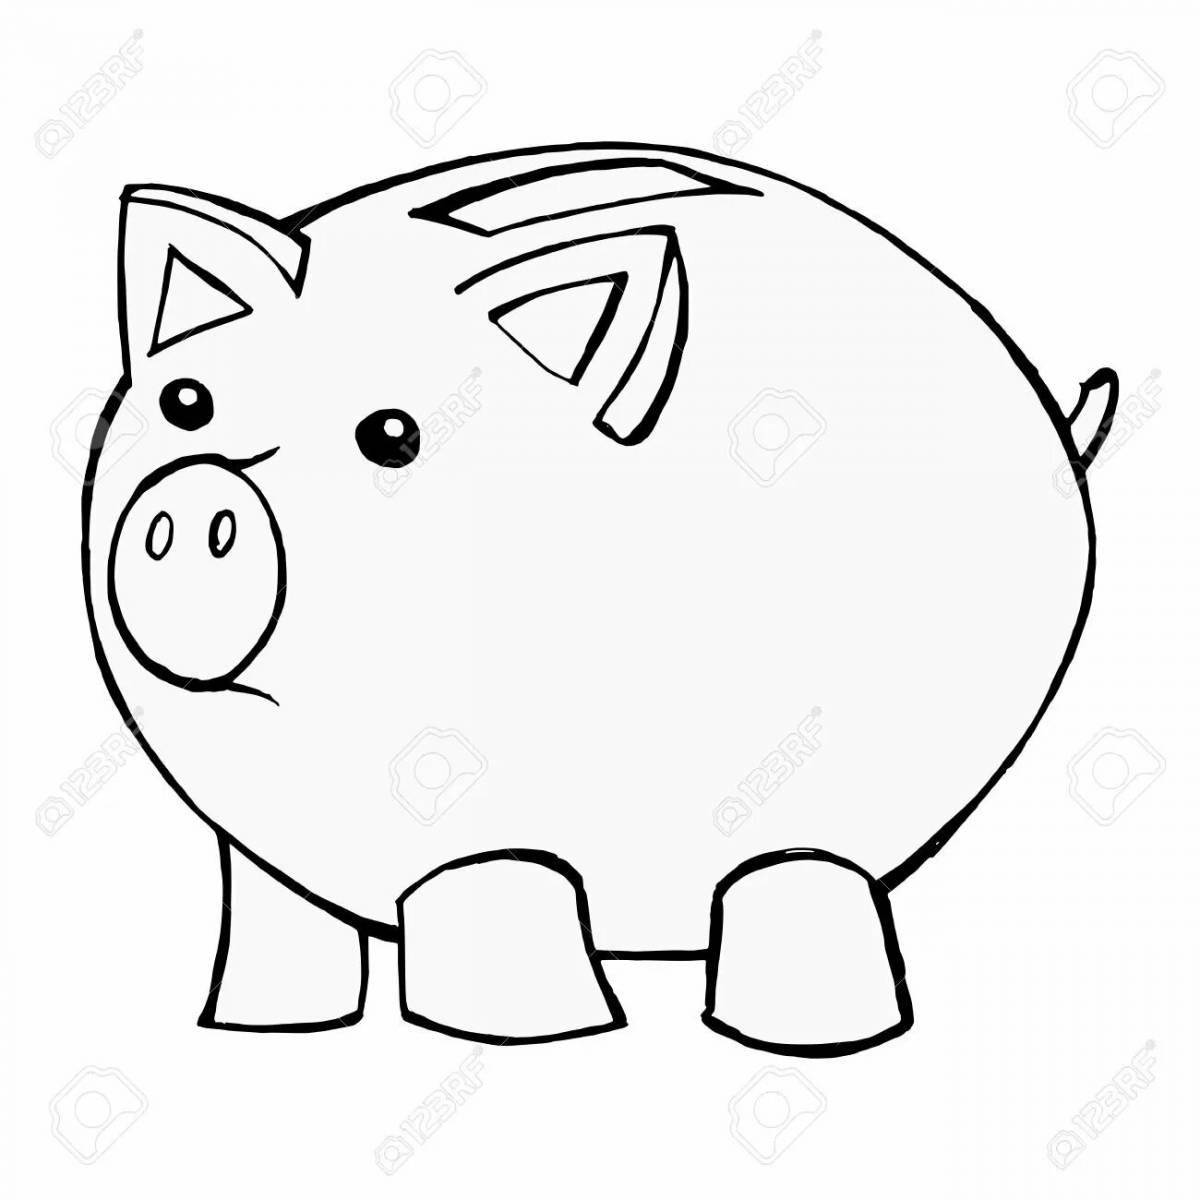 Piggy bank #3